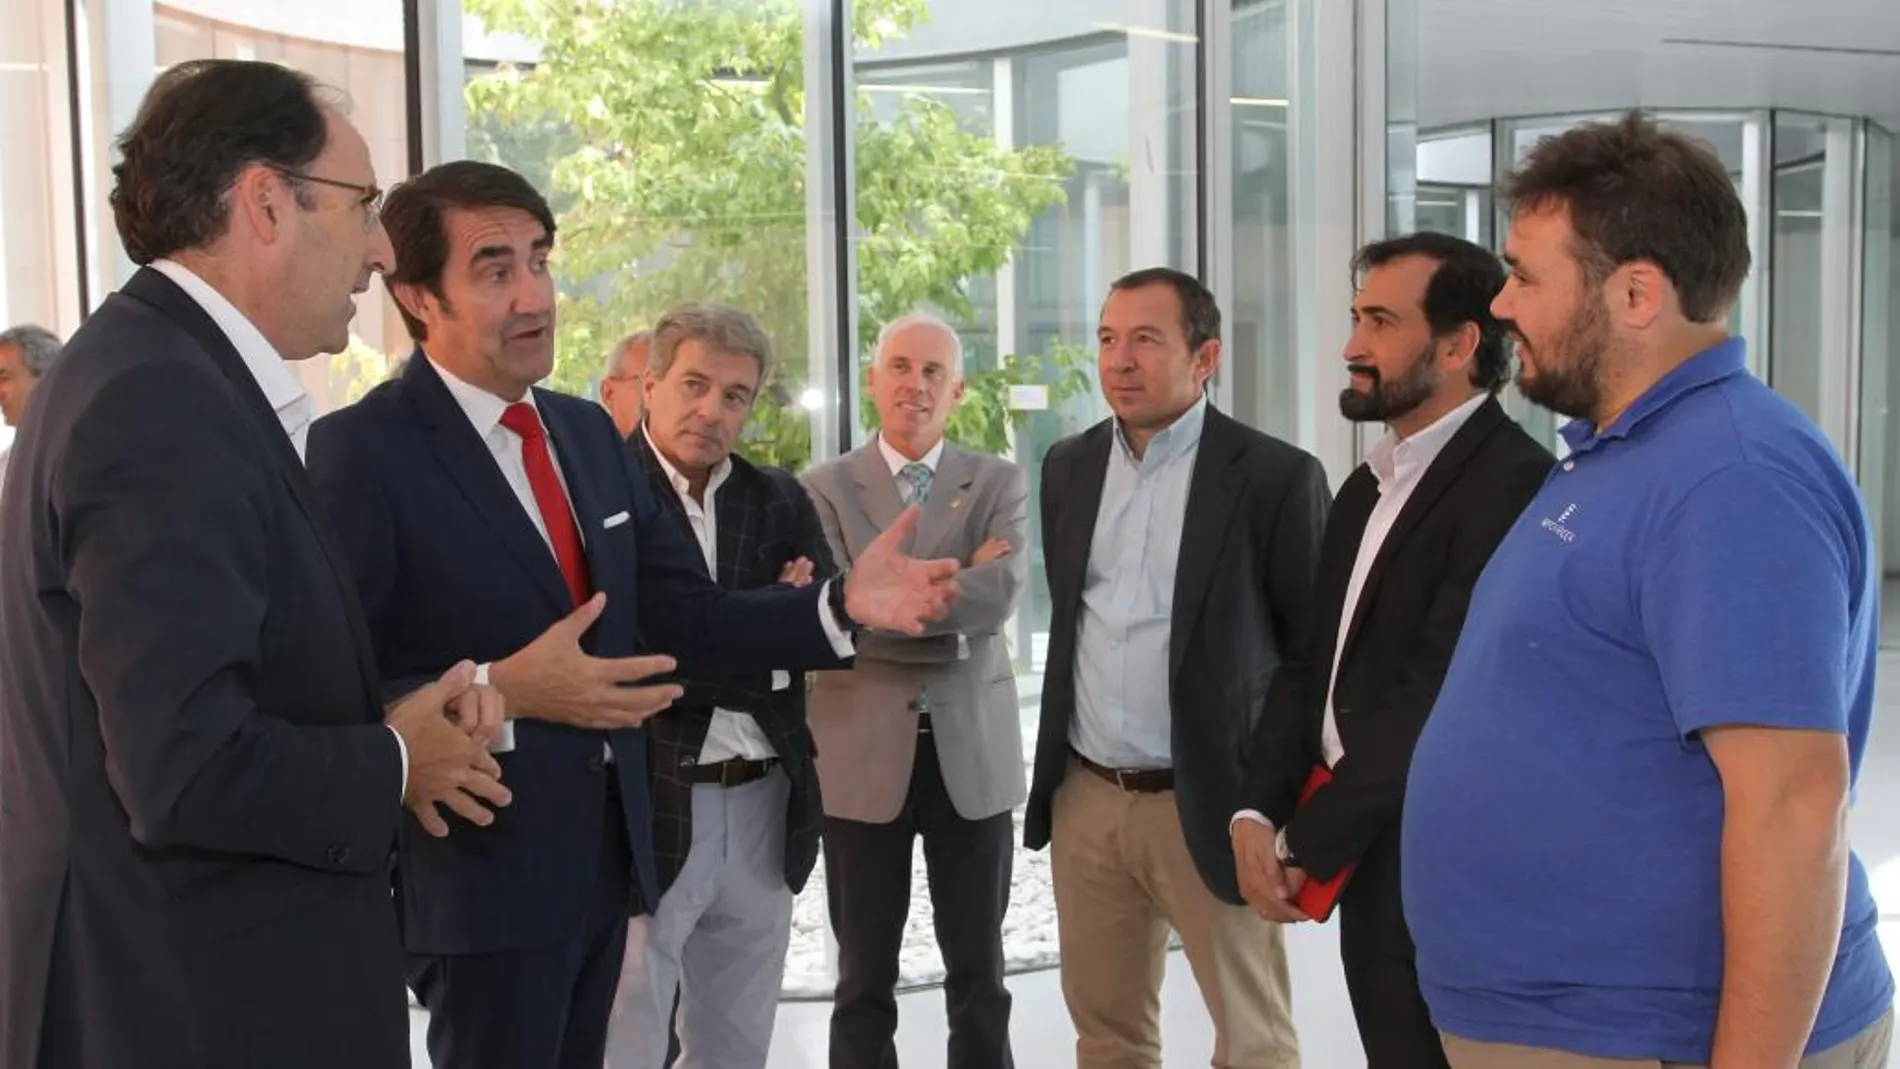 Suiárez-Quiñones conversa con el alcalde de Palencia, Alfonso Polanco, y el director general de El Norte de Castilla, Ángel de las Heras, entre otros, antes de clausurar la Feria de Movilidad Sostenible